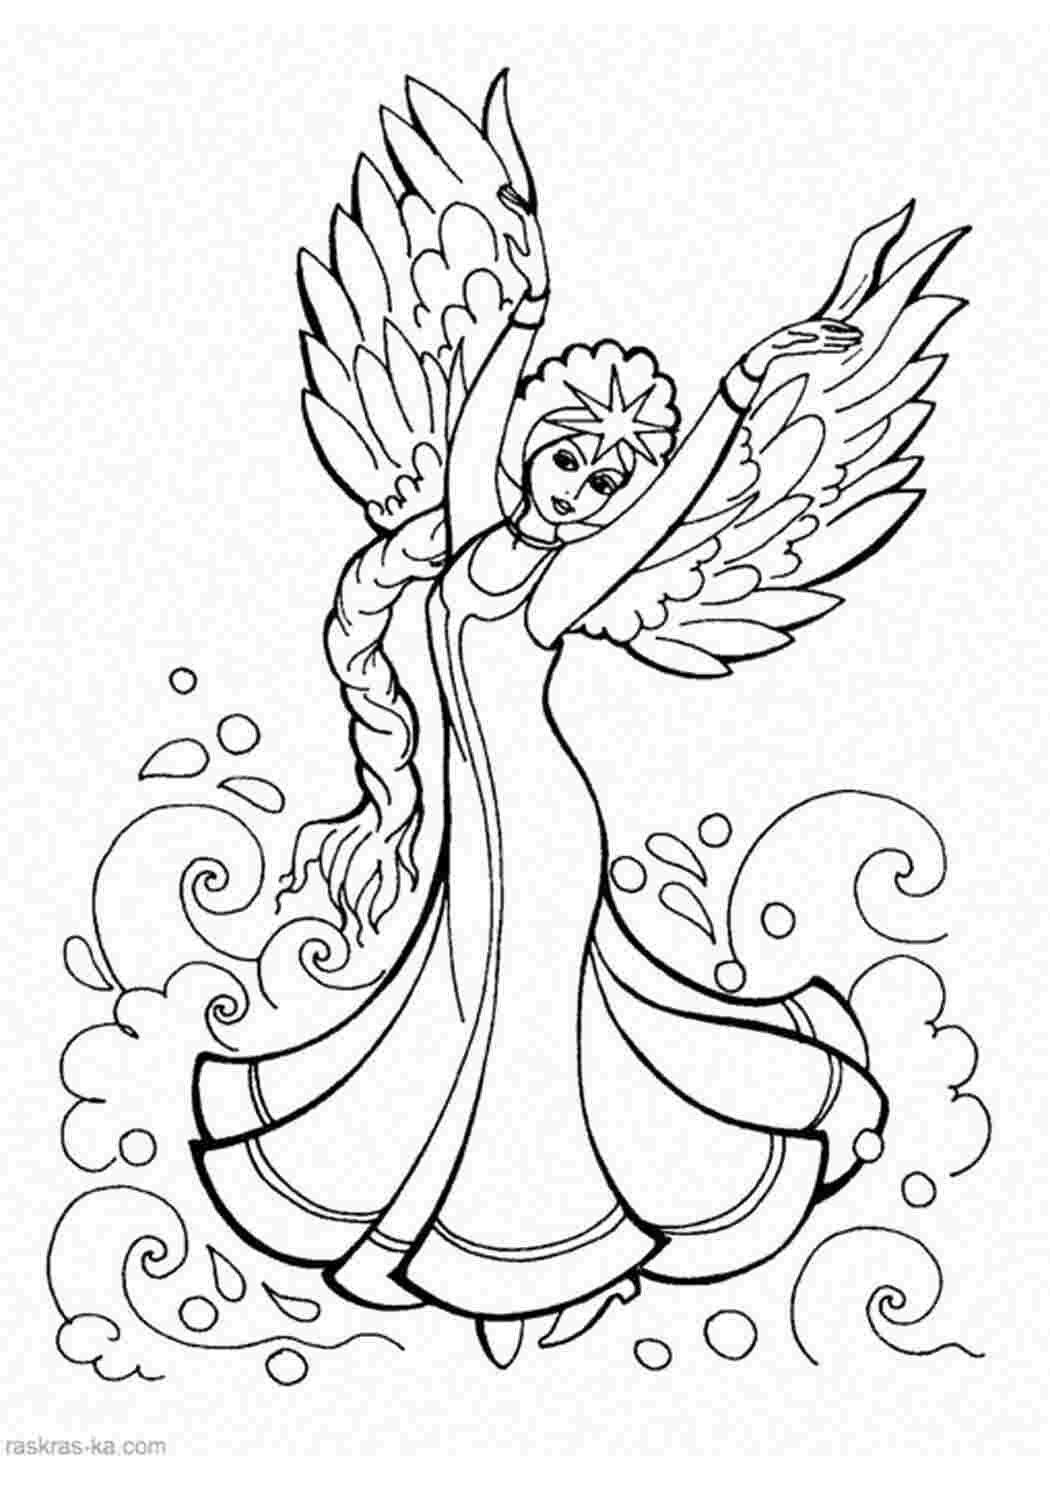 Раскраски Девушка в длинном платье руки как крылья распахнутые и на лбу большая звезда Раскраски раскраски для детей по сказкам 